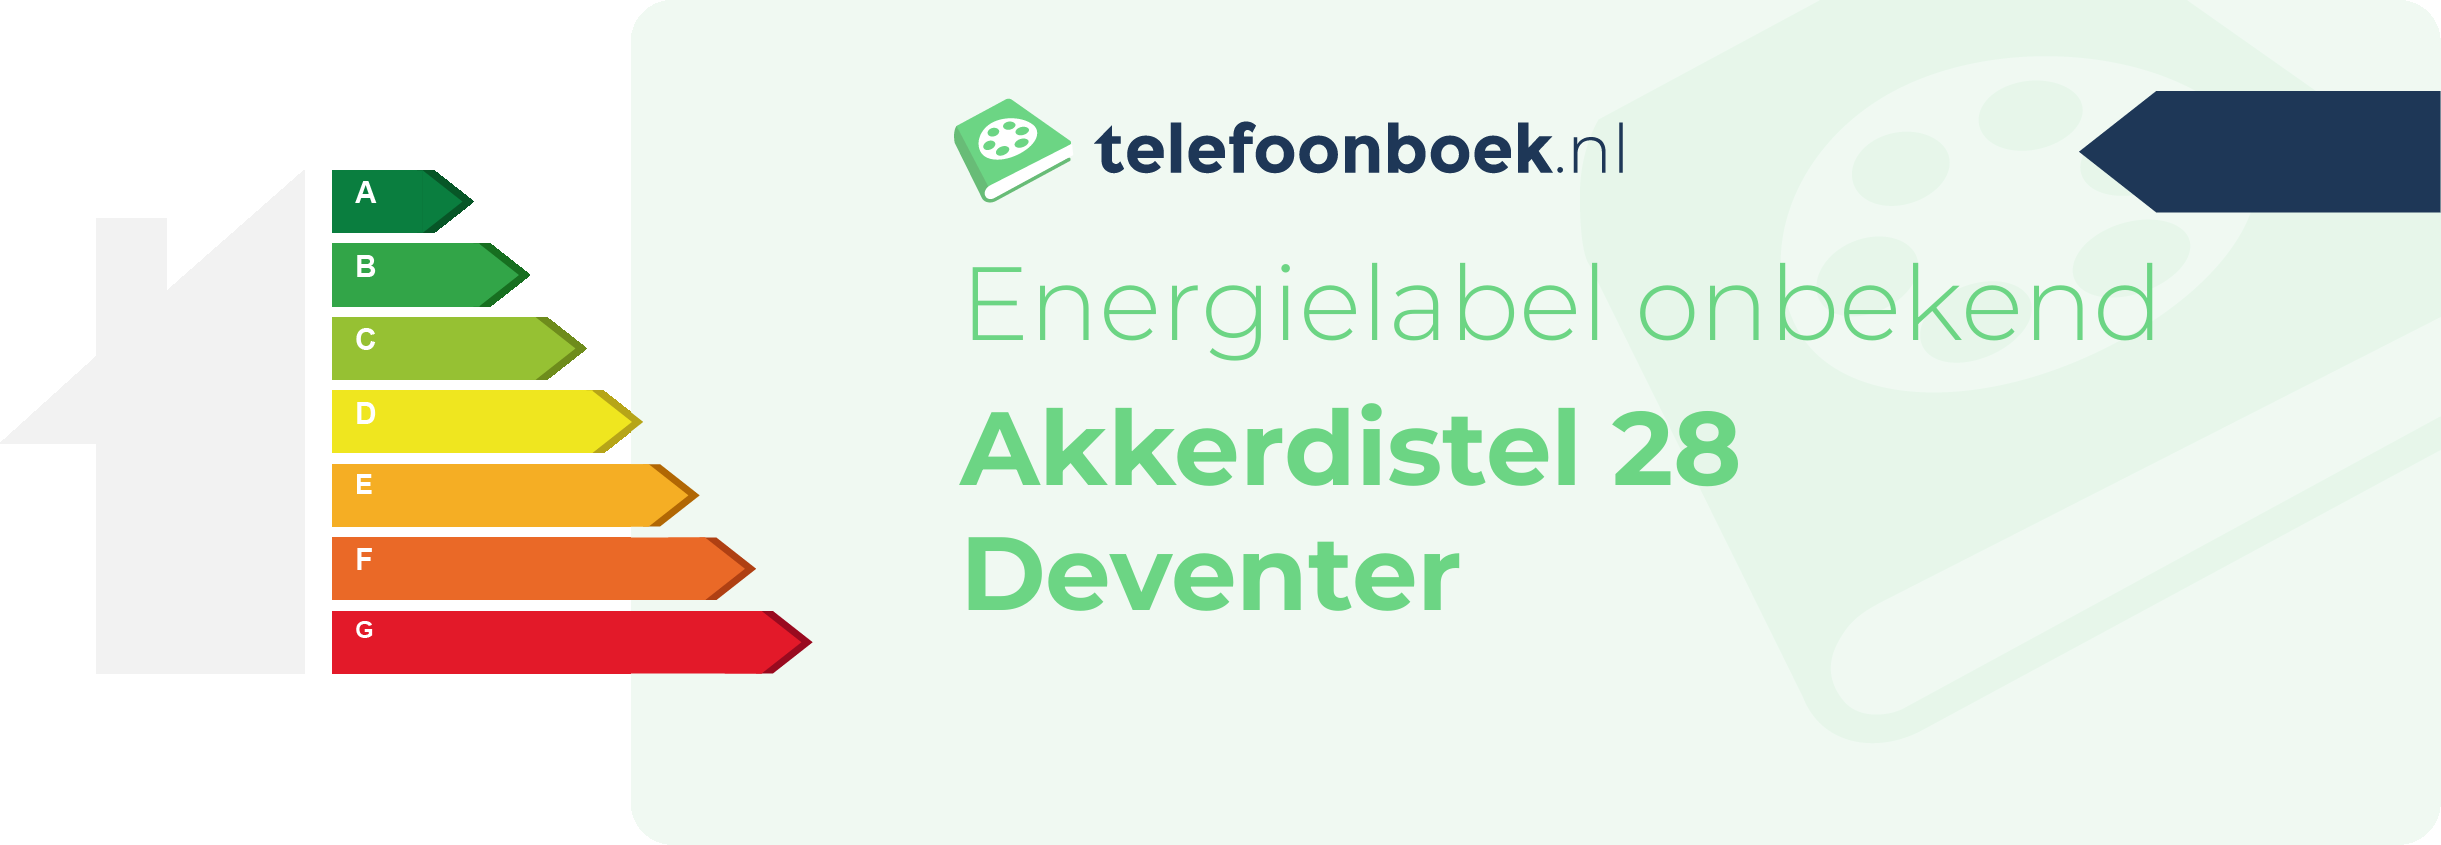 Energielabel Akkerdistel 28 Deventer